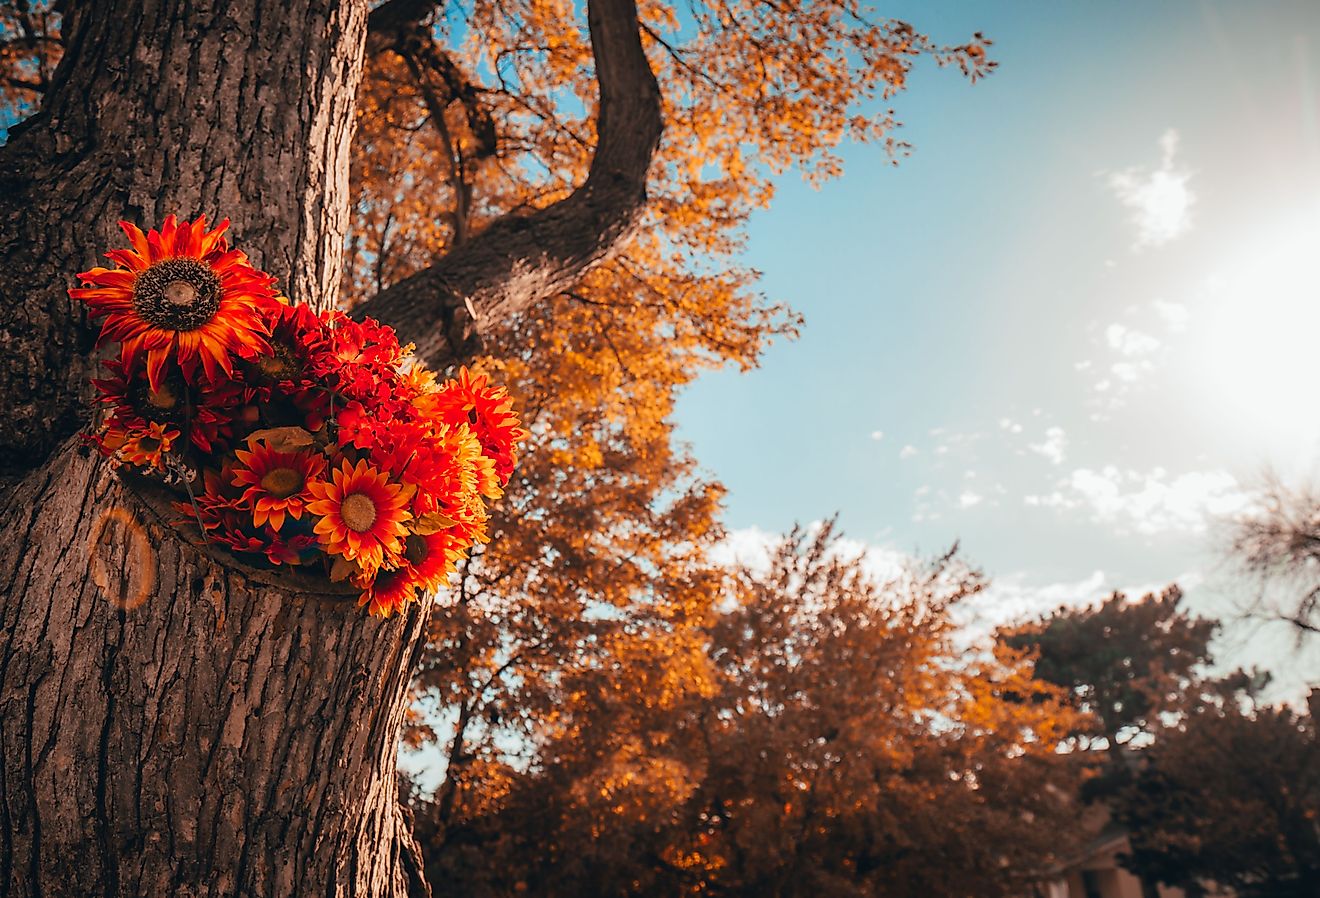 Fall flowers in the trunk of a tree in Omaha, Nebraska.